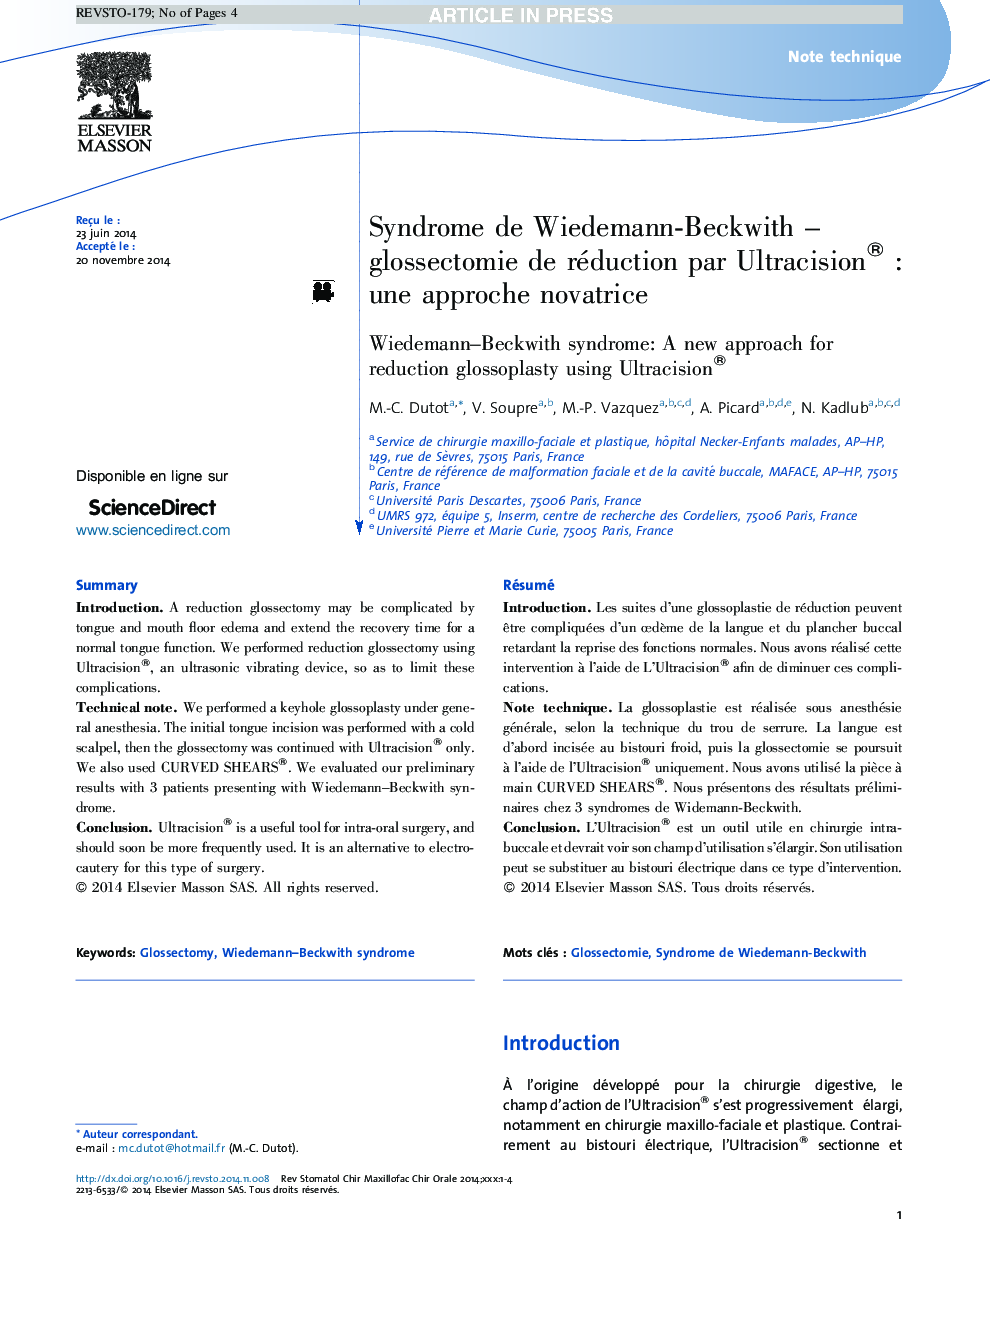 Syndrome de Wiedemann-BeckwithÂ -Â glossectomie de réduction par Ultracision®Â : une approche novatrice